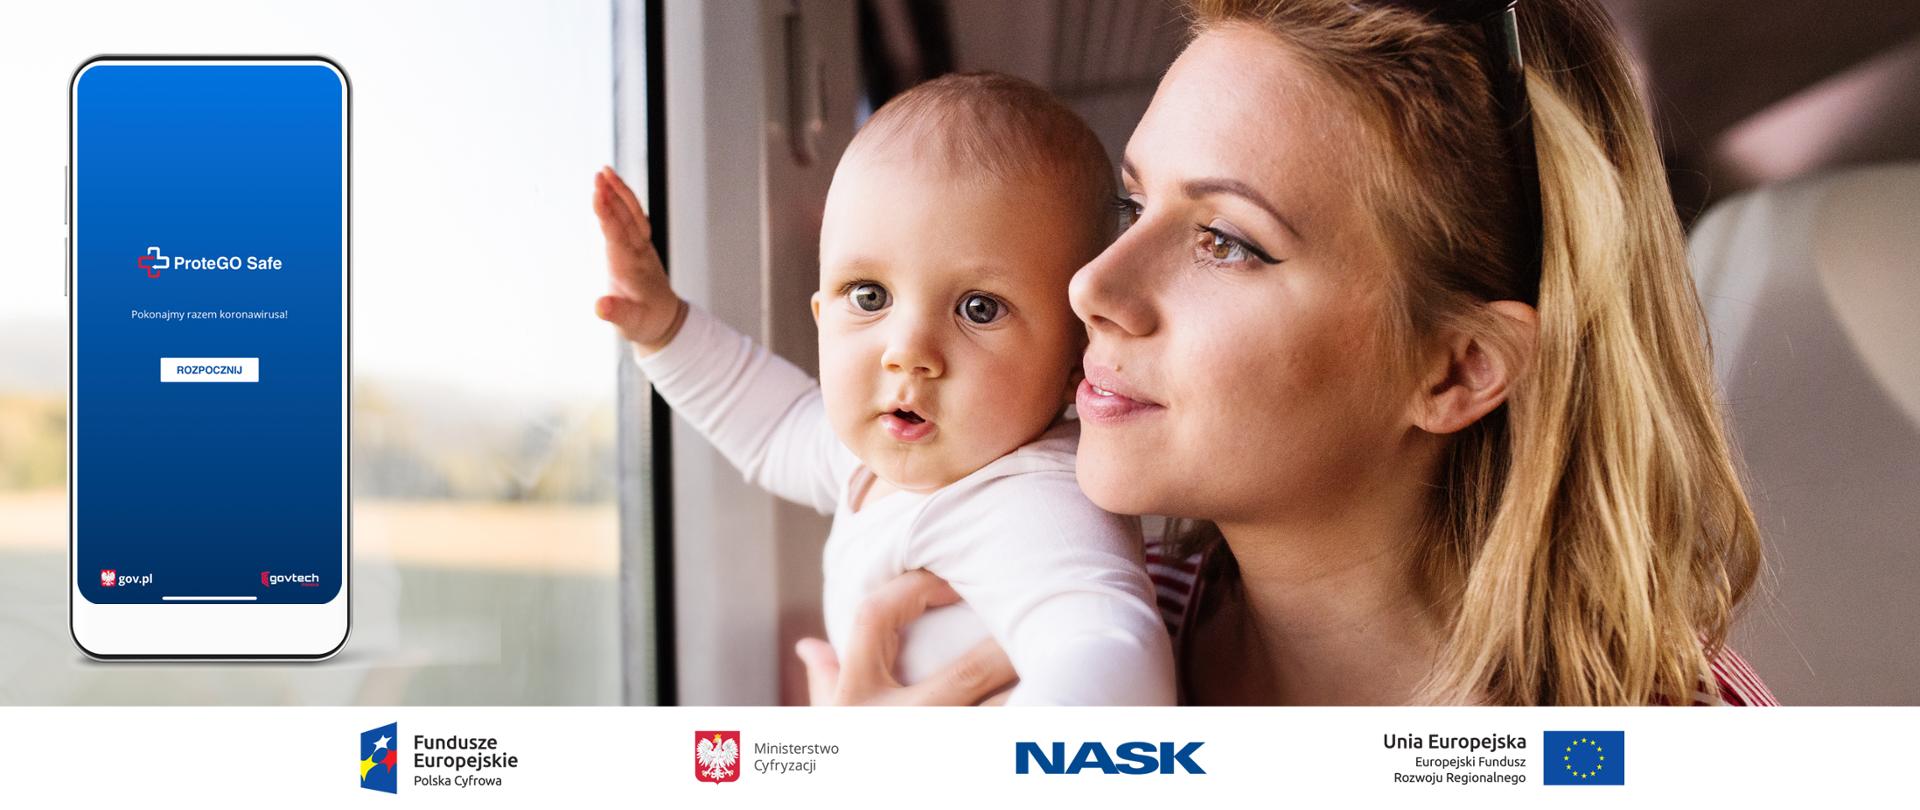 Grafika. Uśmiechnięta matka i małe dziecko jadą pociągiem i patrzą przez okno. Obok wizualizacja smartfona z włączoną aplikacją ProteGo Safe.